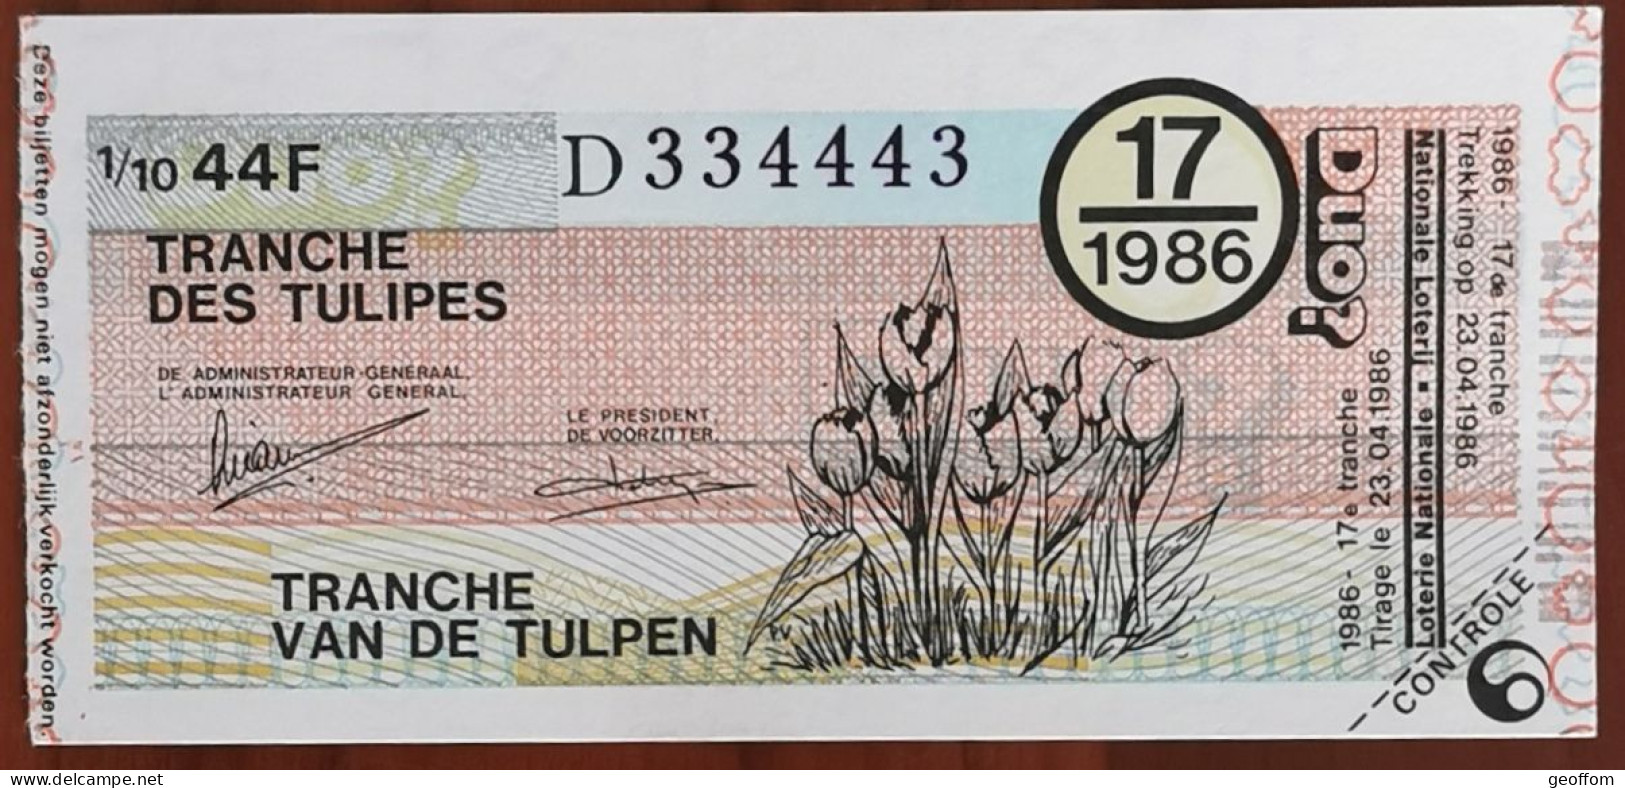 Billet De Loterie Nationale Belgique 1986 17e Tranche Des Tulipes - 23-4-1986 - Billetes De Lotería